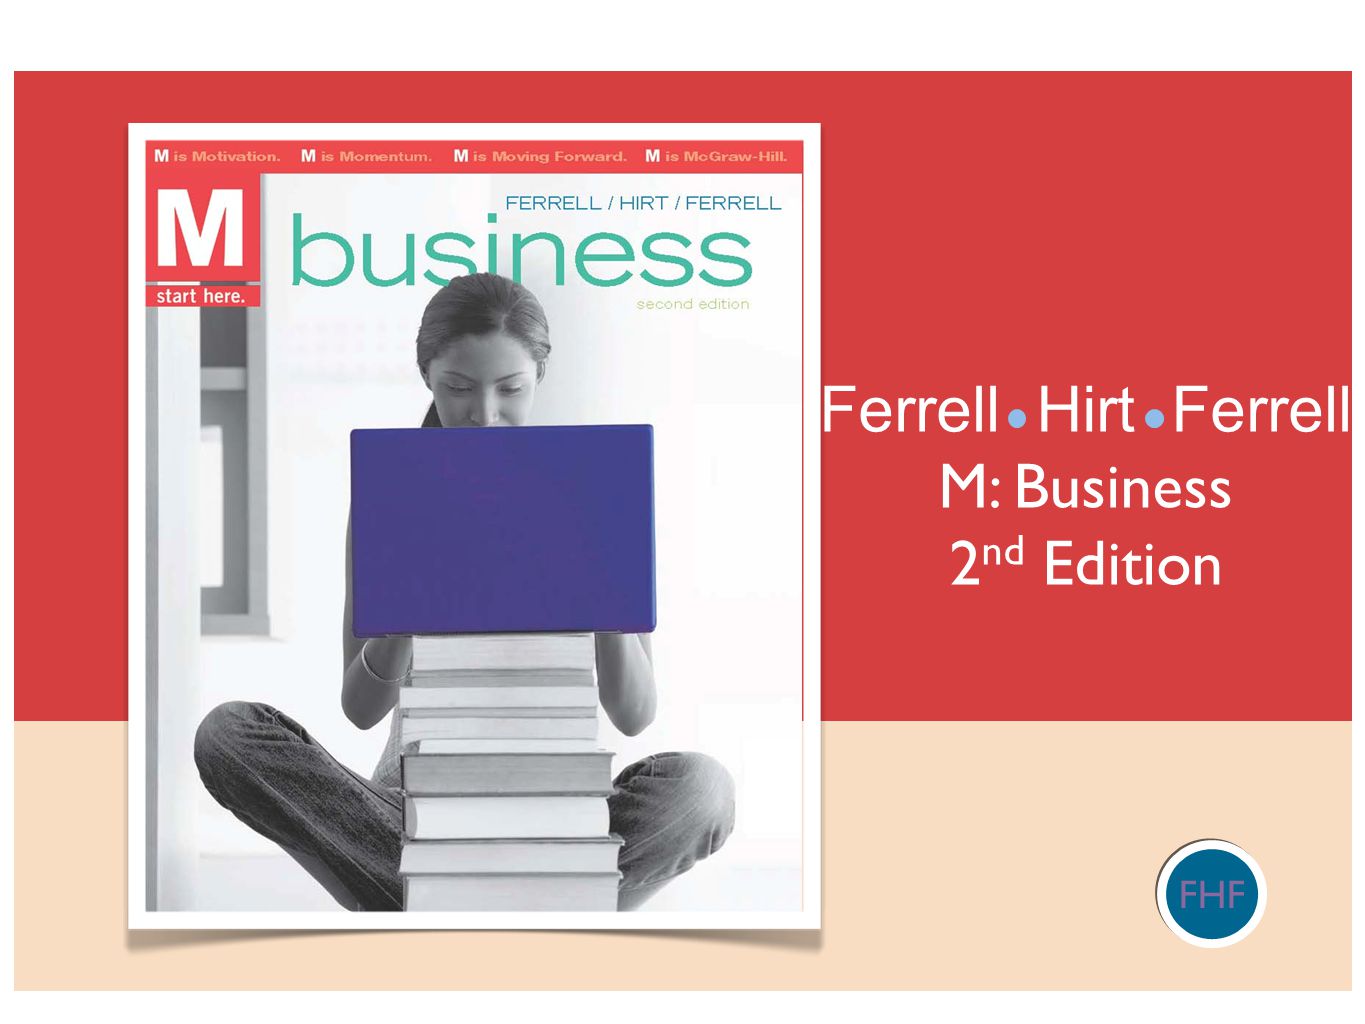 Ferrell Hirt Ferrell M: Business 2nd Edition FHF